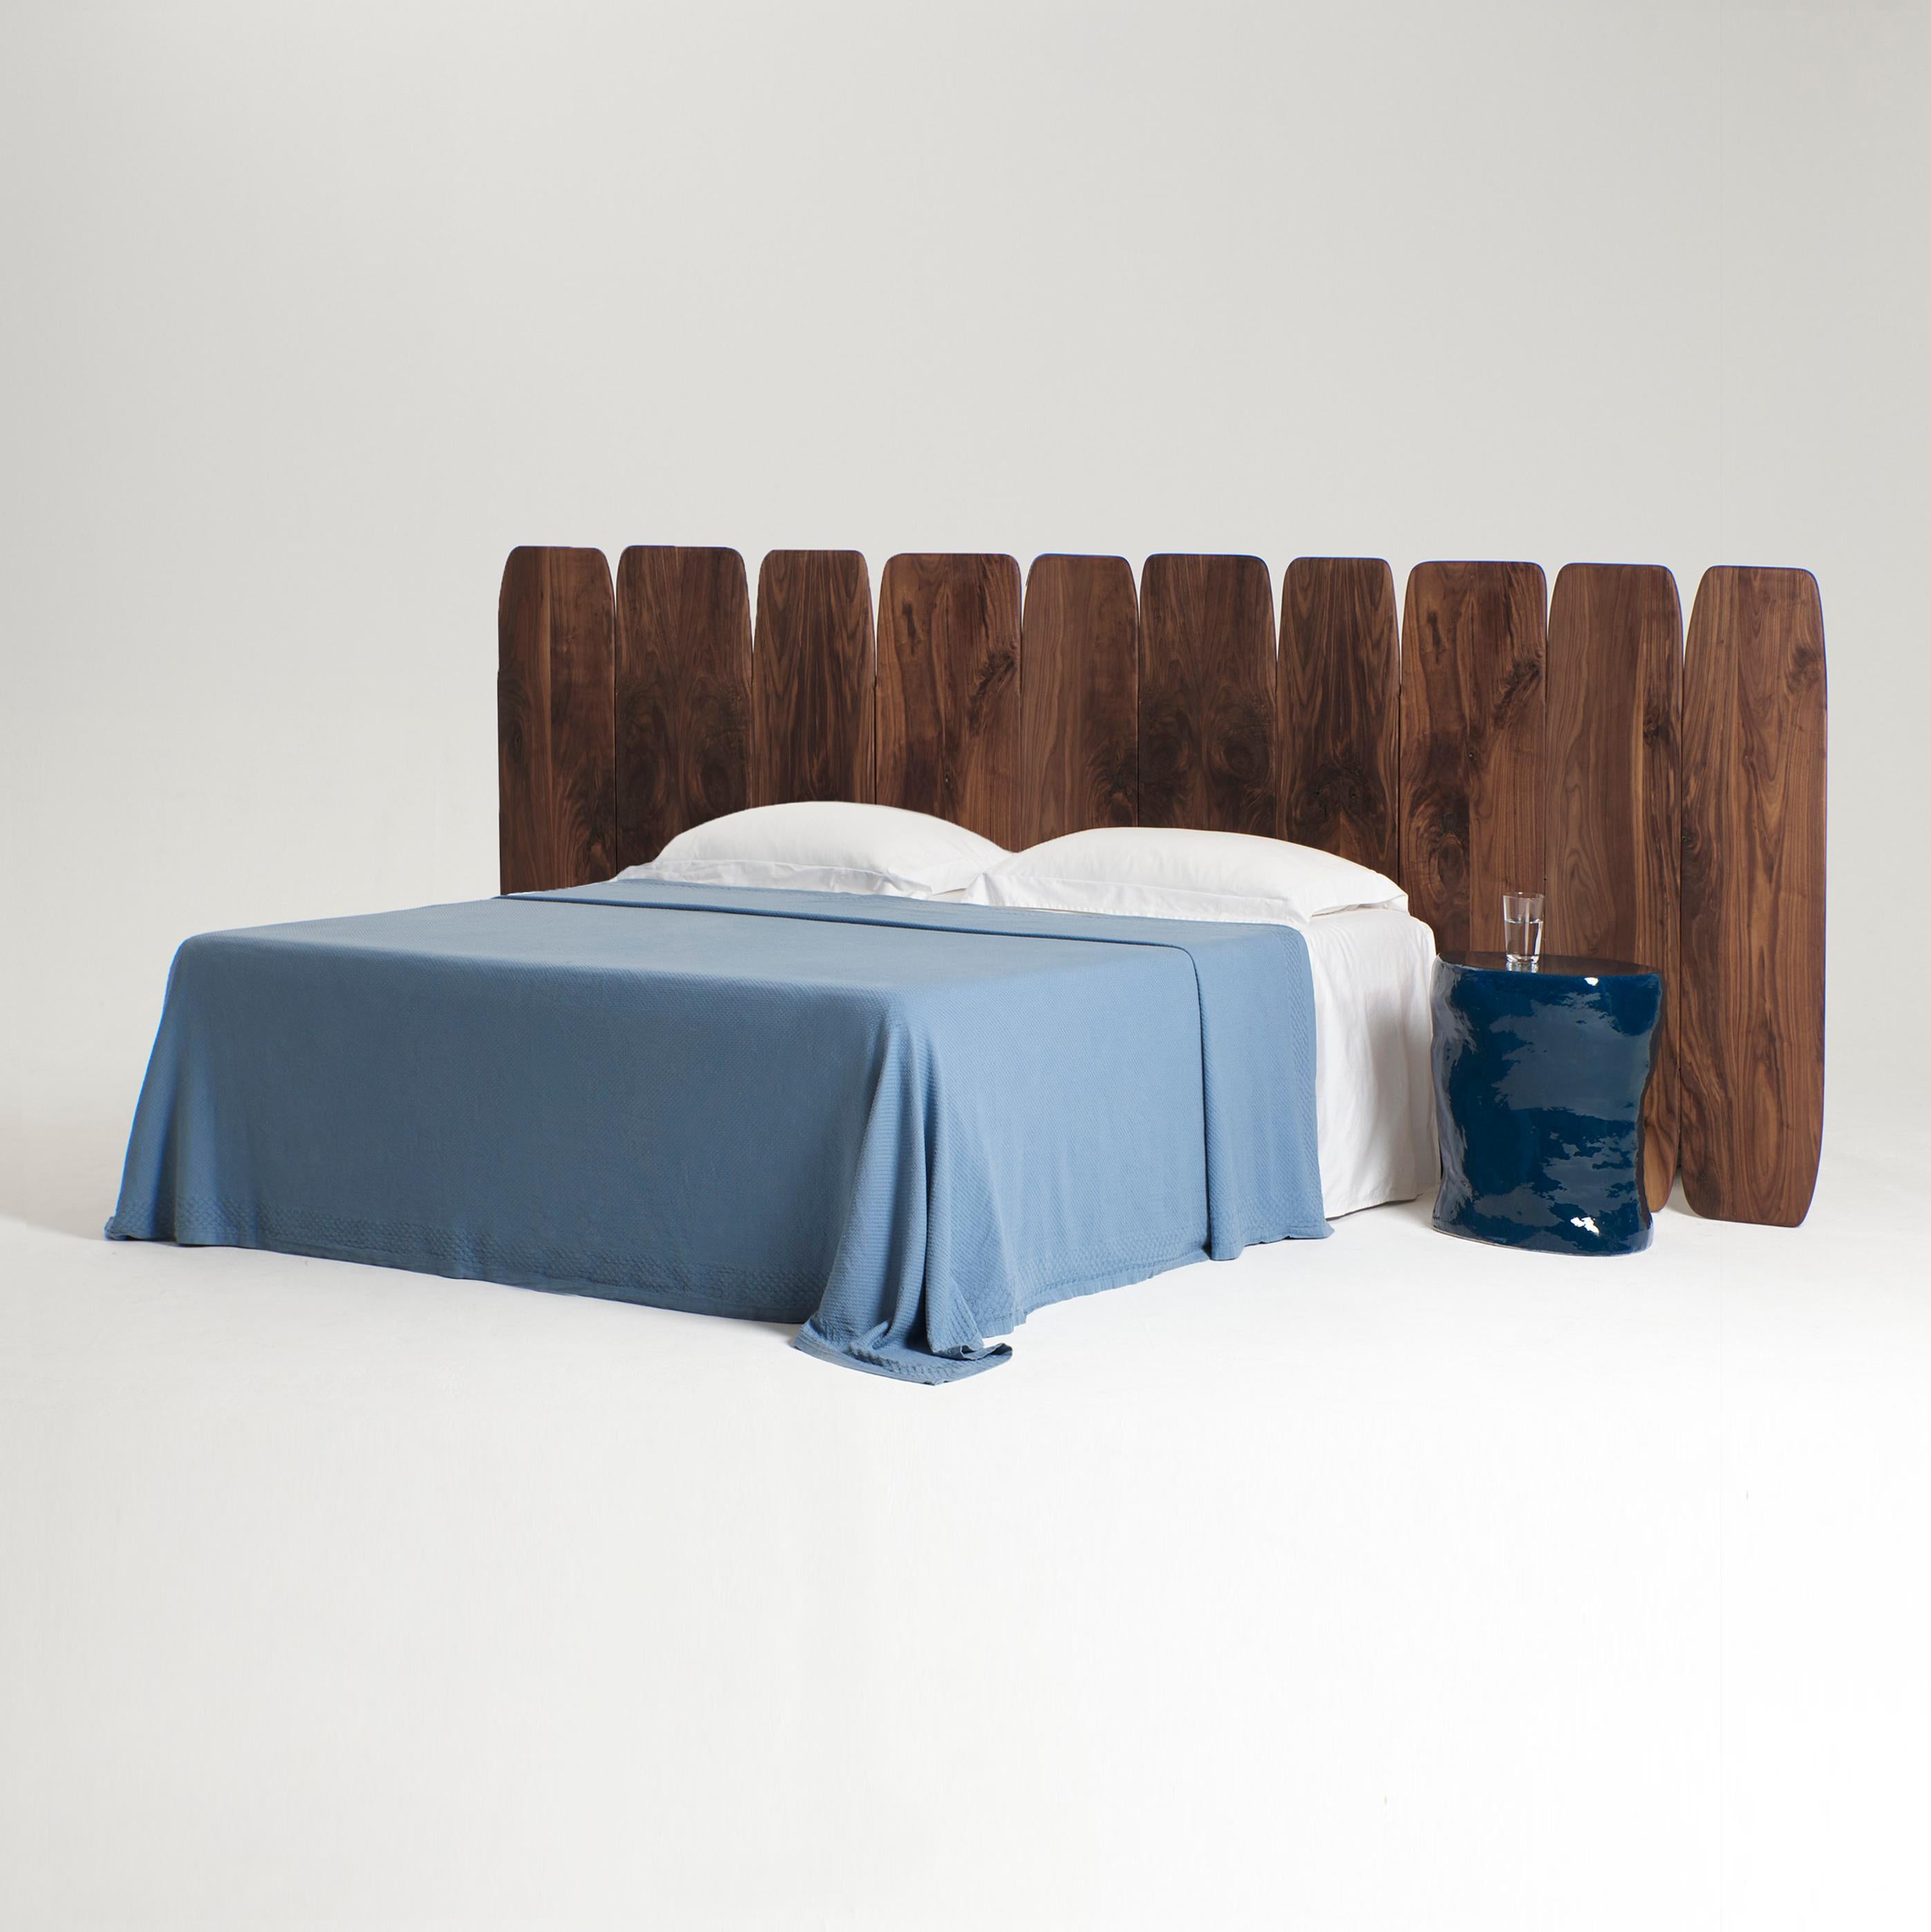 Tête de lit Madeira Large
Conçu par le project 213A en 2023

Les panneaux en bois de noyer les plus fins sont alignés et fixés au mur pour s'adapter à l'arrière d'un lit kingsize.

Dimensions sur mesure sur demande, également disponible en chêne et